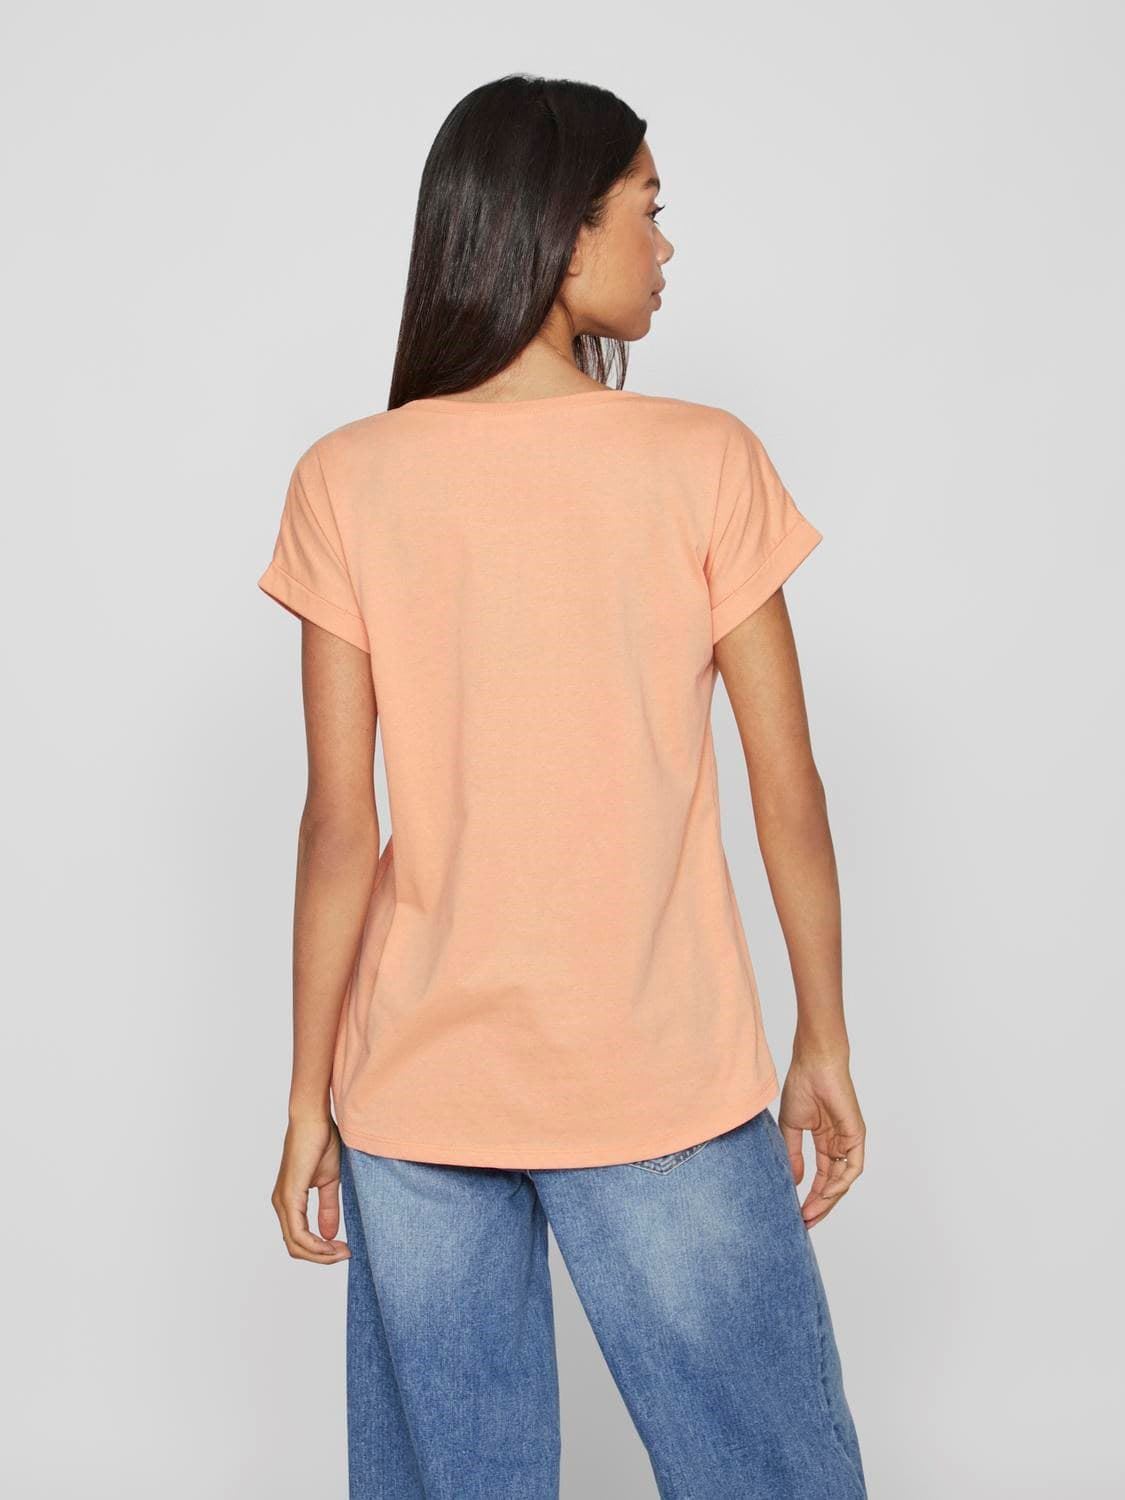 Camiseta coral vidreamers - Imagen 2